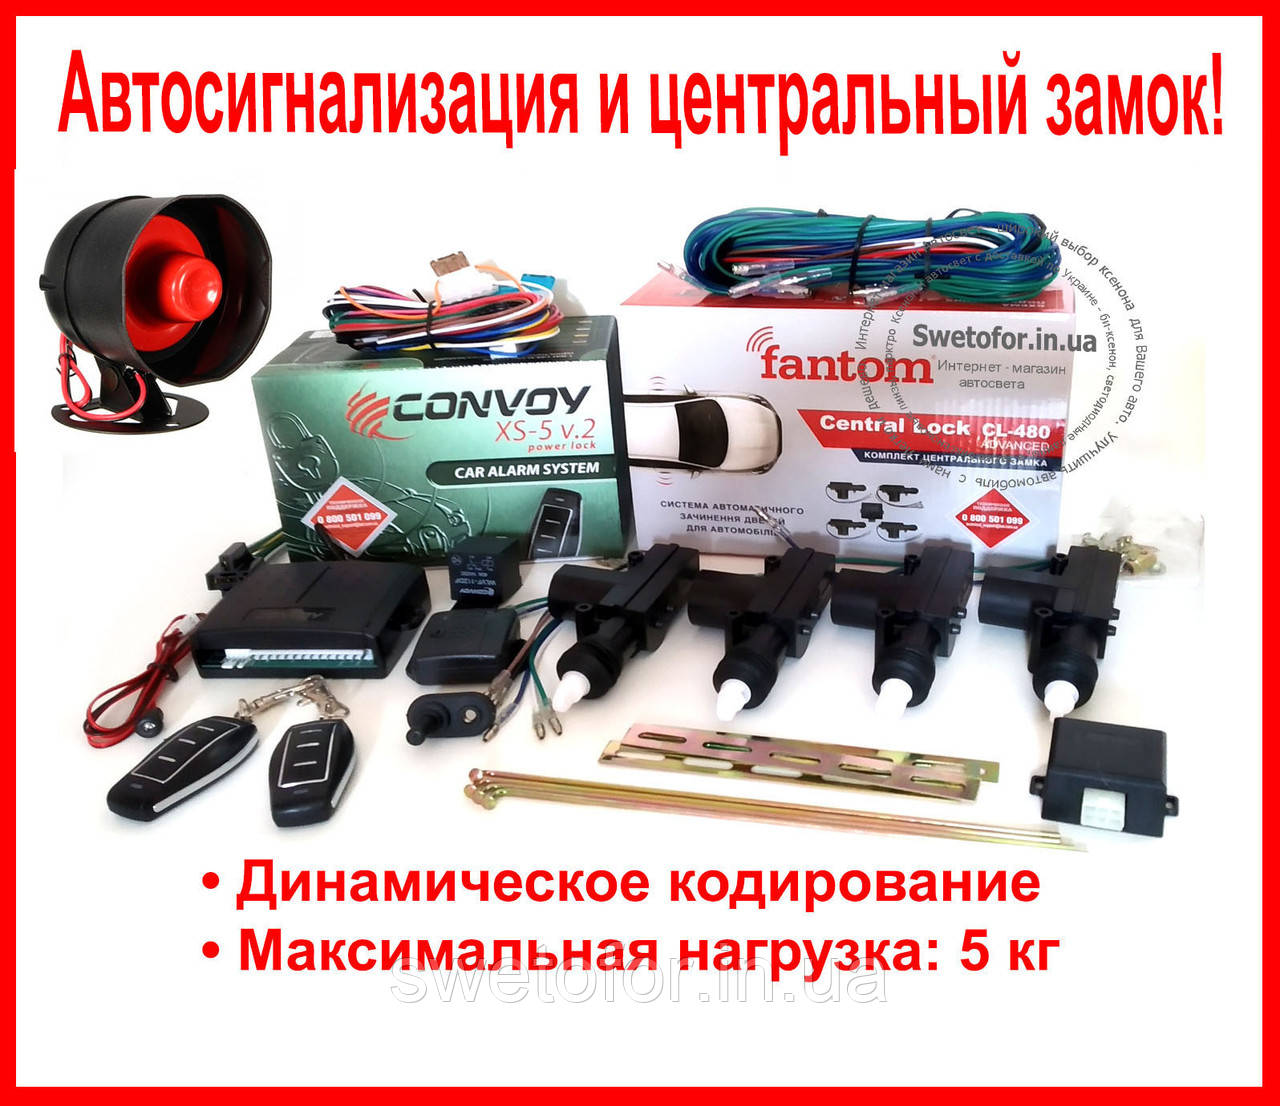 Комплект авто-сигналізація Convoy xs-5 v.2 і центральні замки Fantom і сирена!